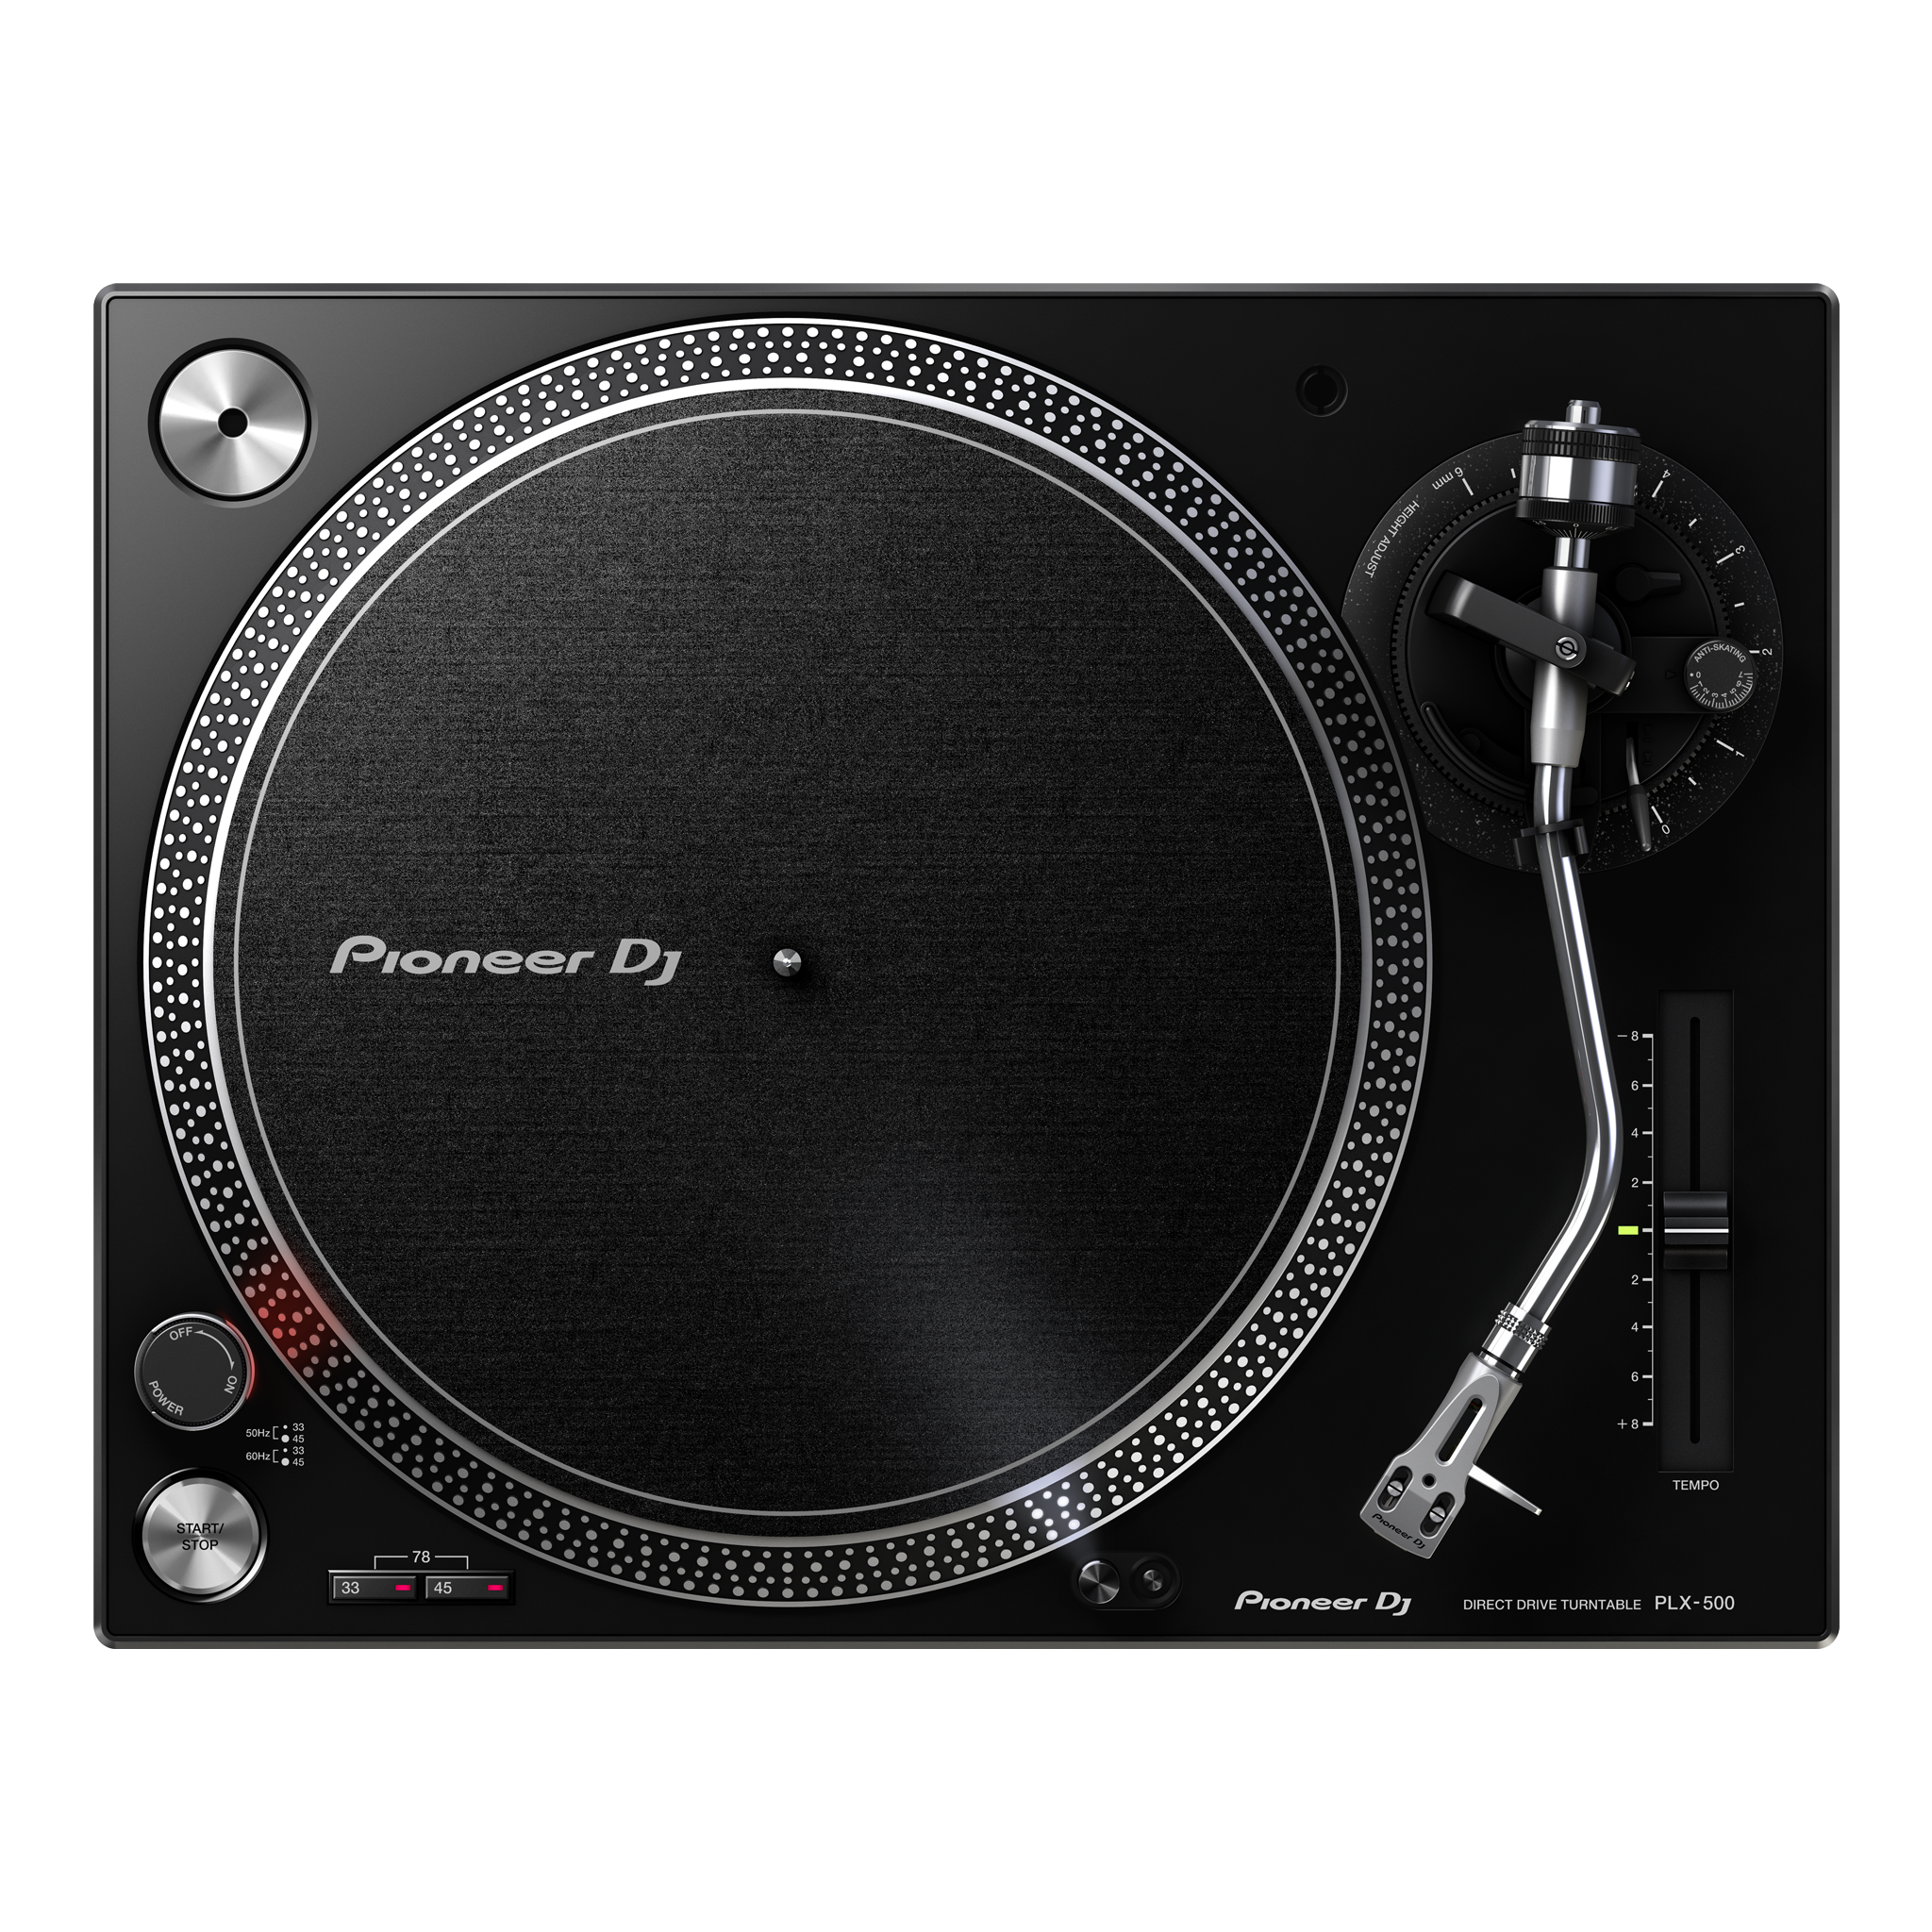 ターンテーブル – Pioneer DJ Japan Store